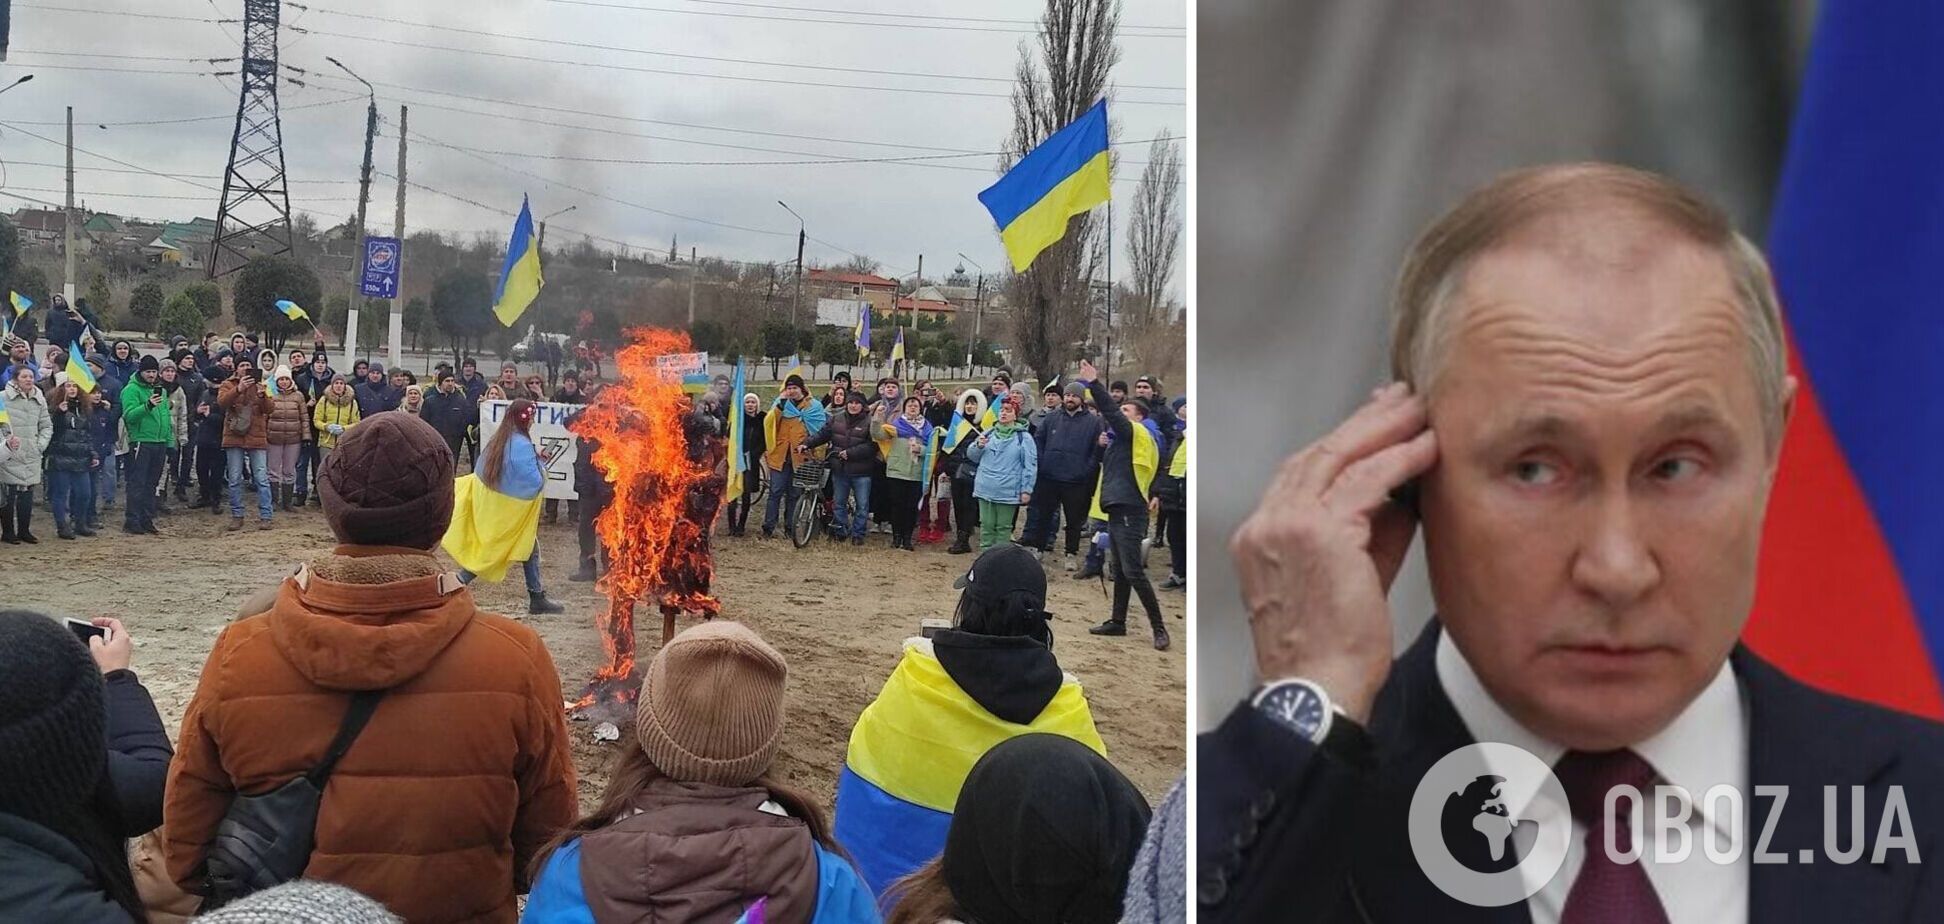 'Ми тут влада': у Мелітополі мітингувальники спалили опудало Путіна. Фото і відео